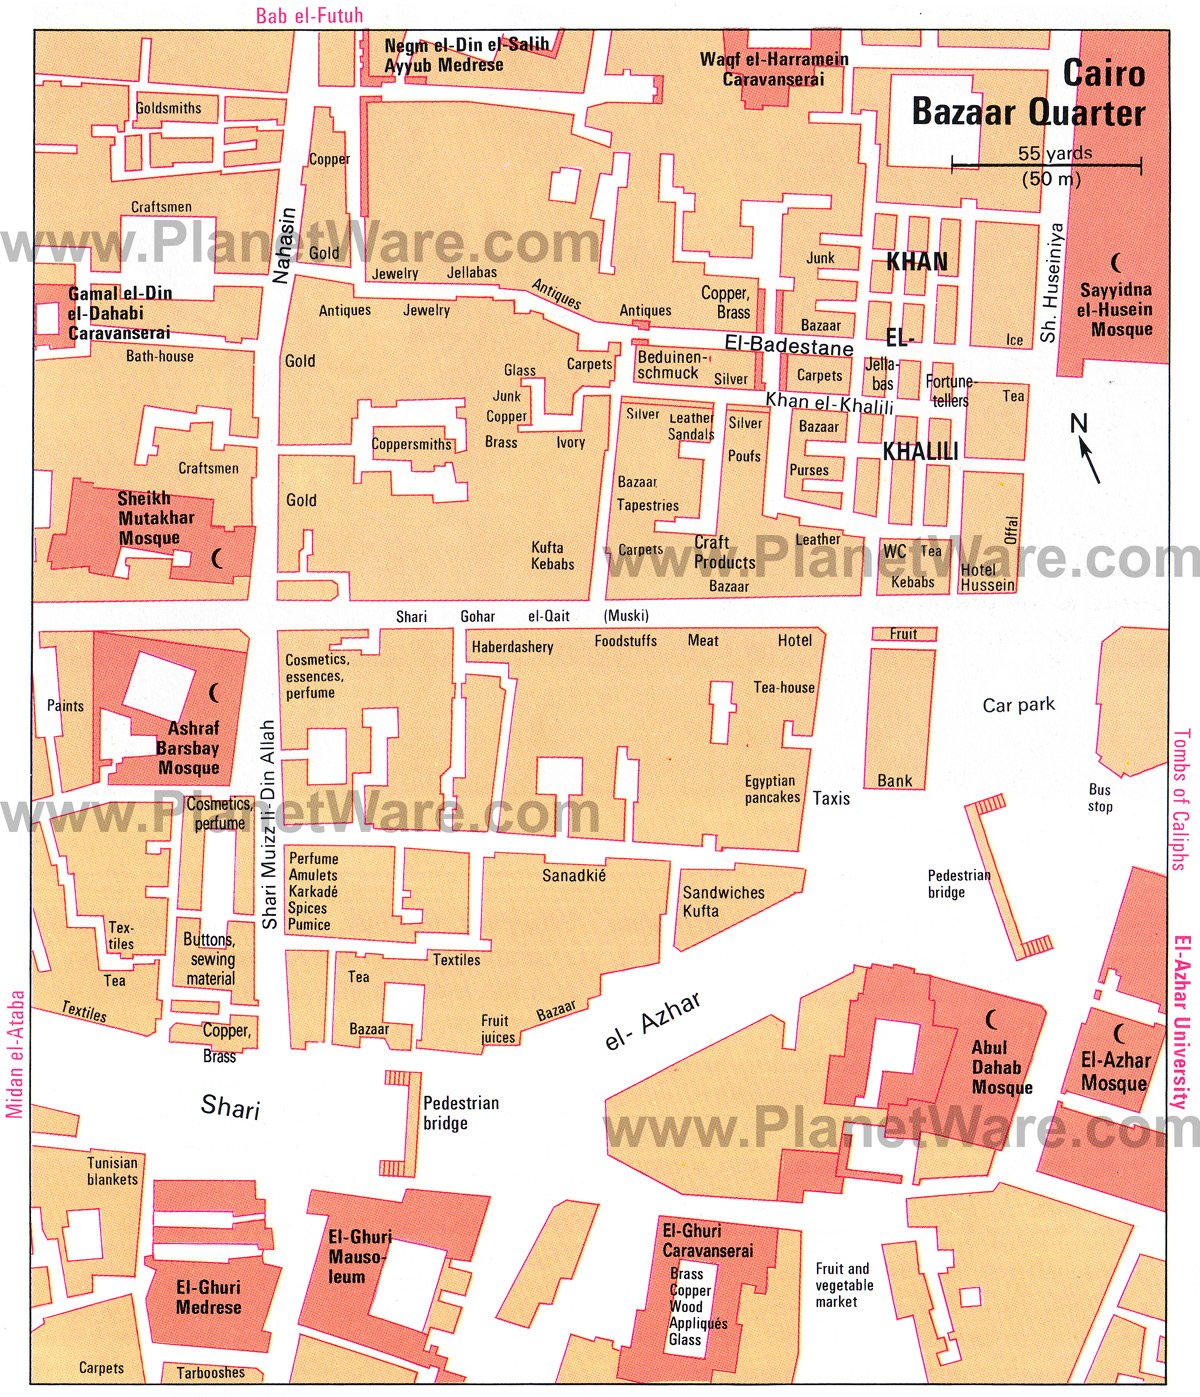 Cairo Bazaar Quarter - Floor plan map